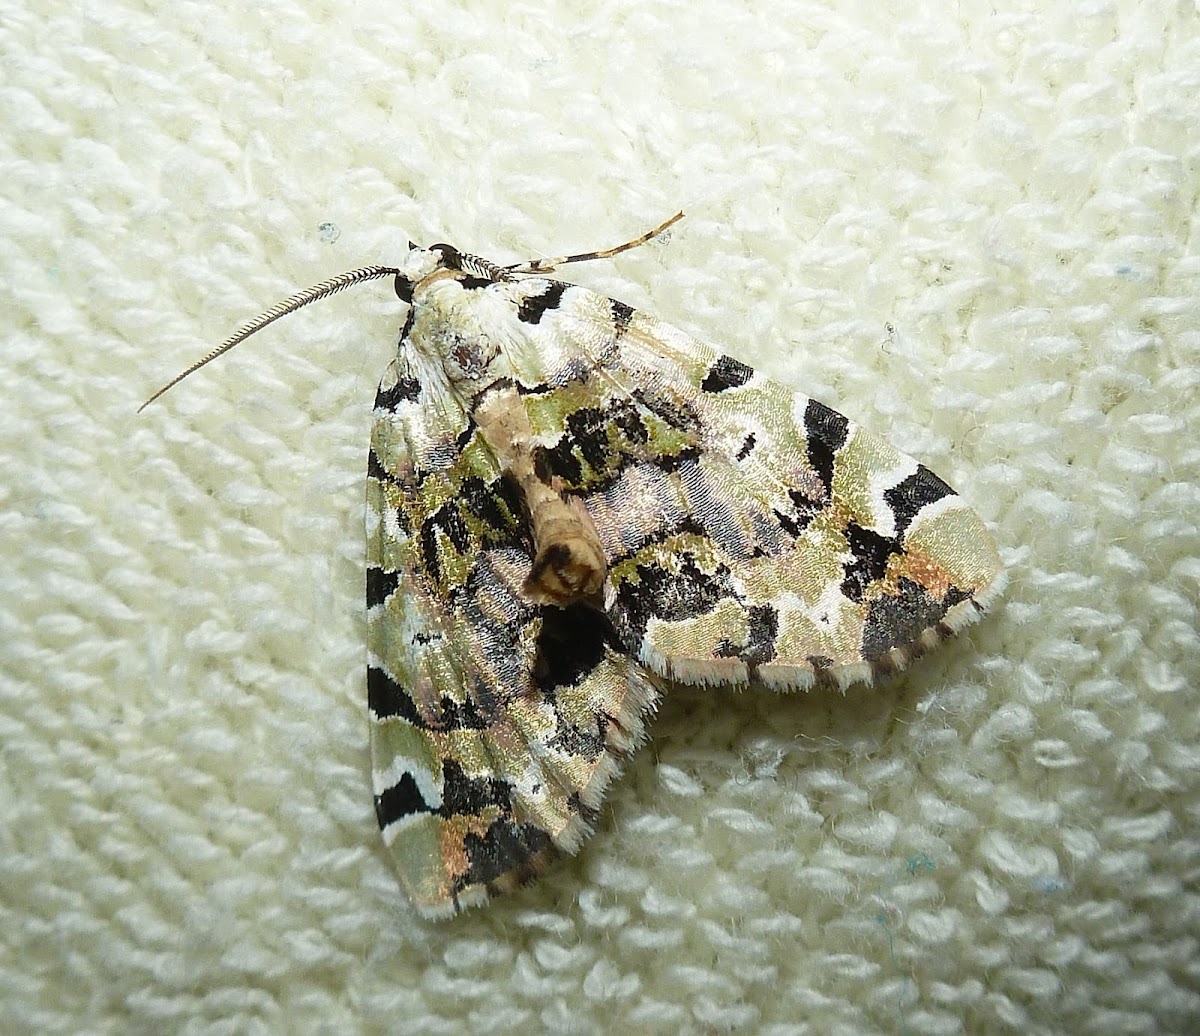 Lichen Moth